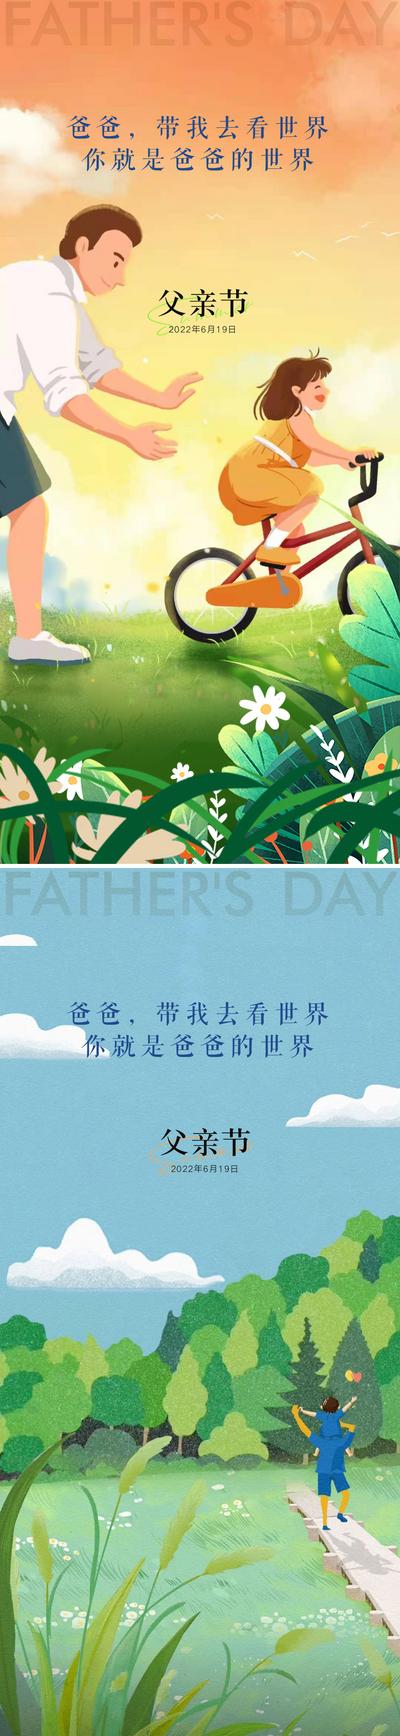 南门网 广告 海报 节日 父亲 插画 温馨 系列